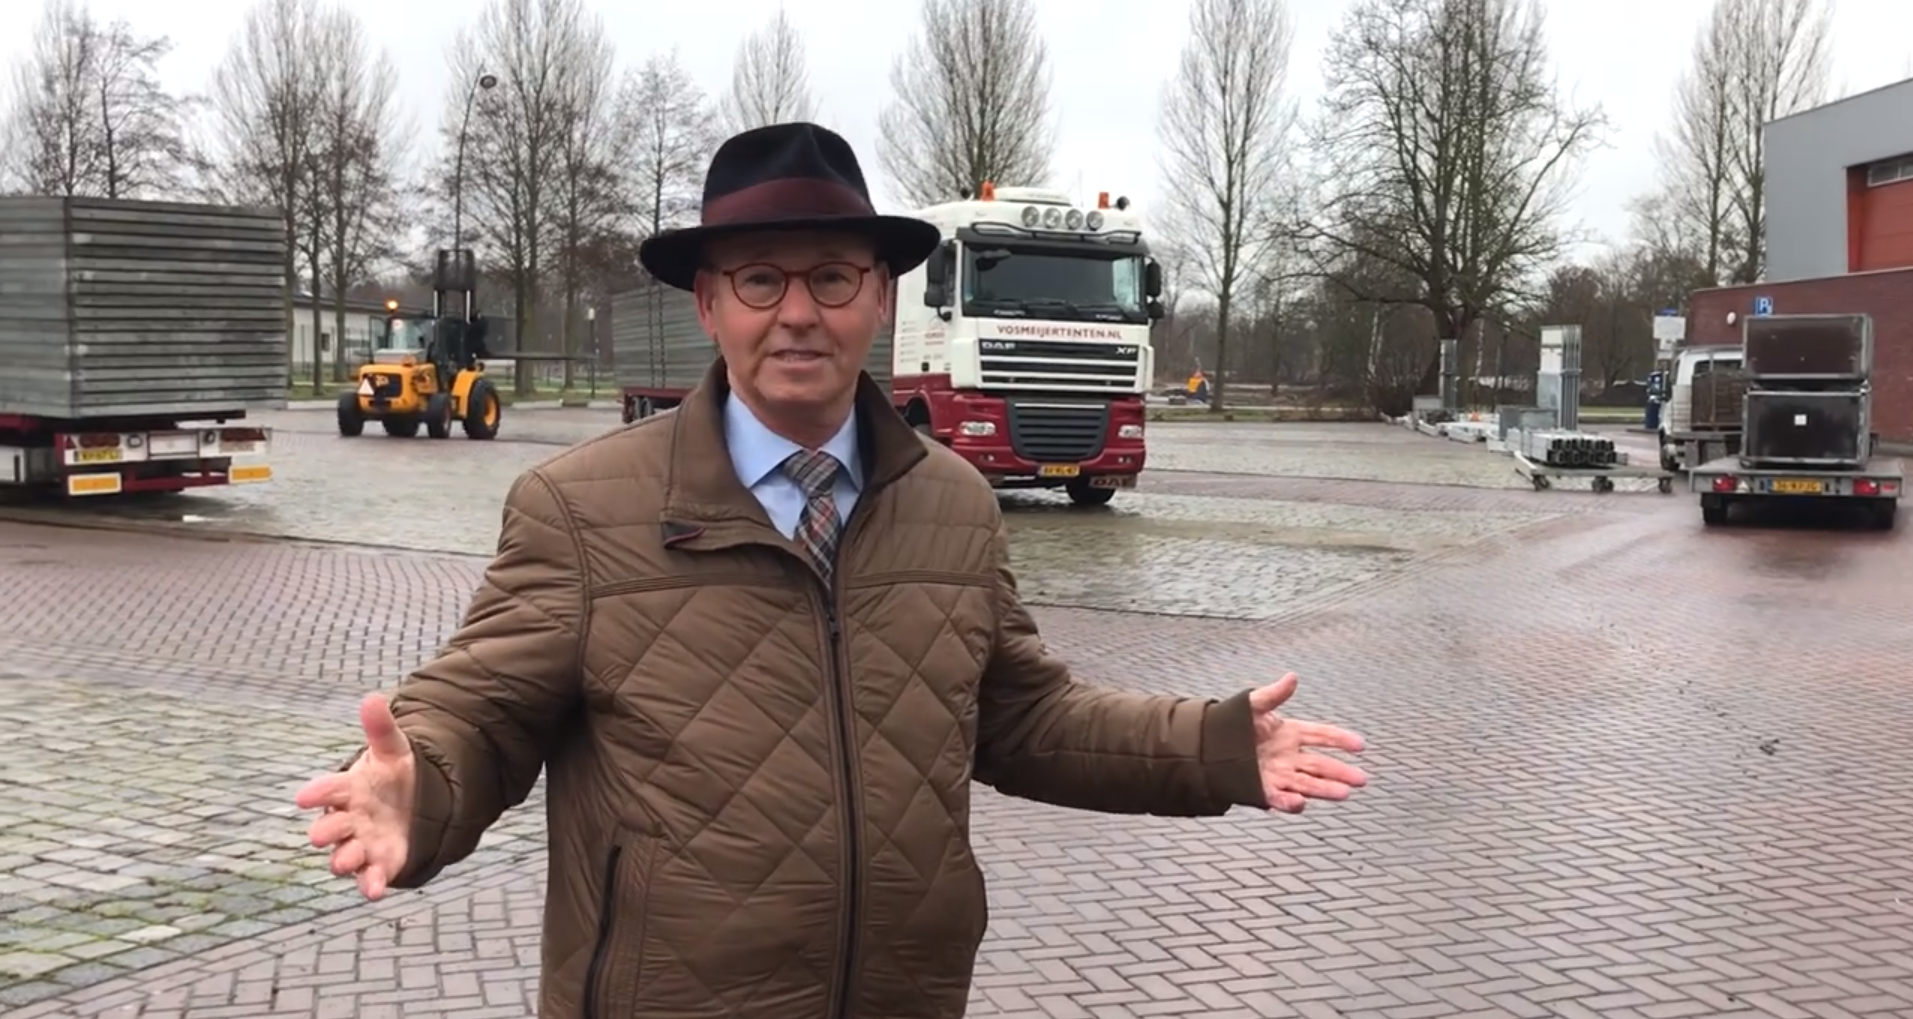 Toelichting burgemeester Koelewijn over vaccinatielocatie Burgemeester Berghuisplein